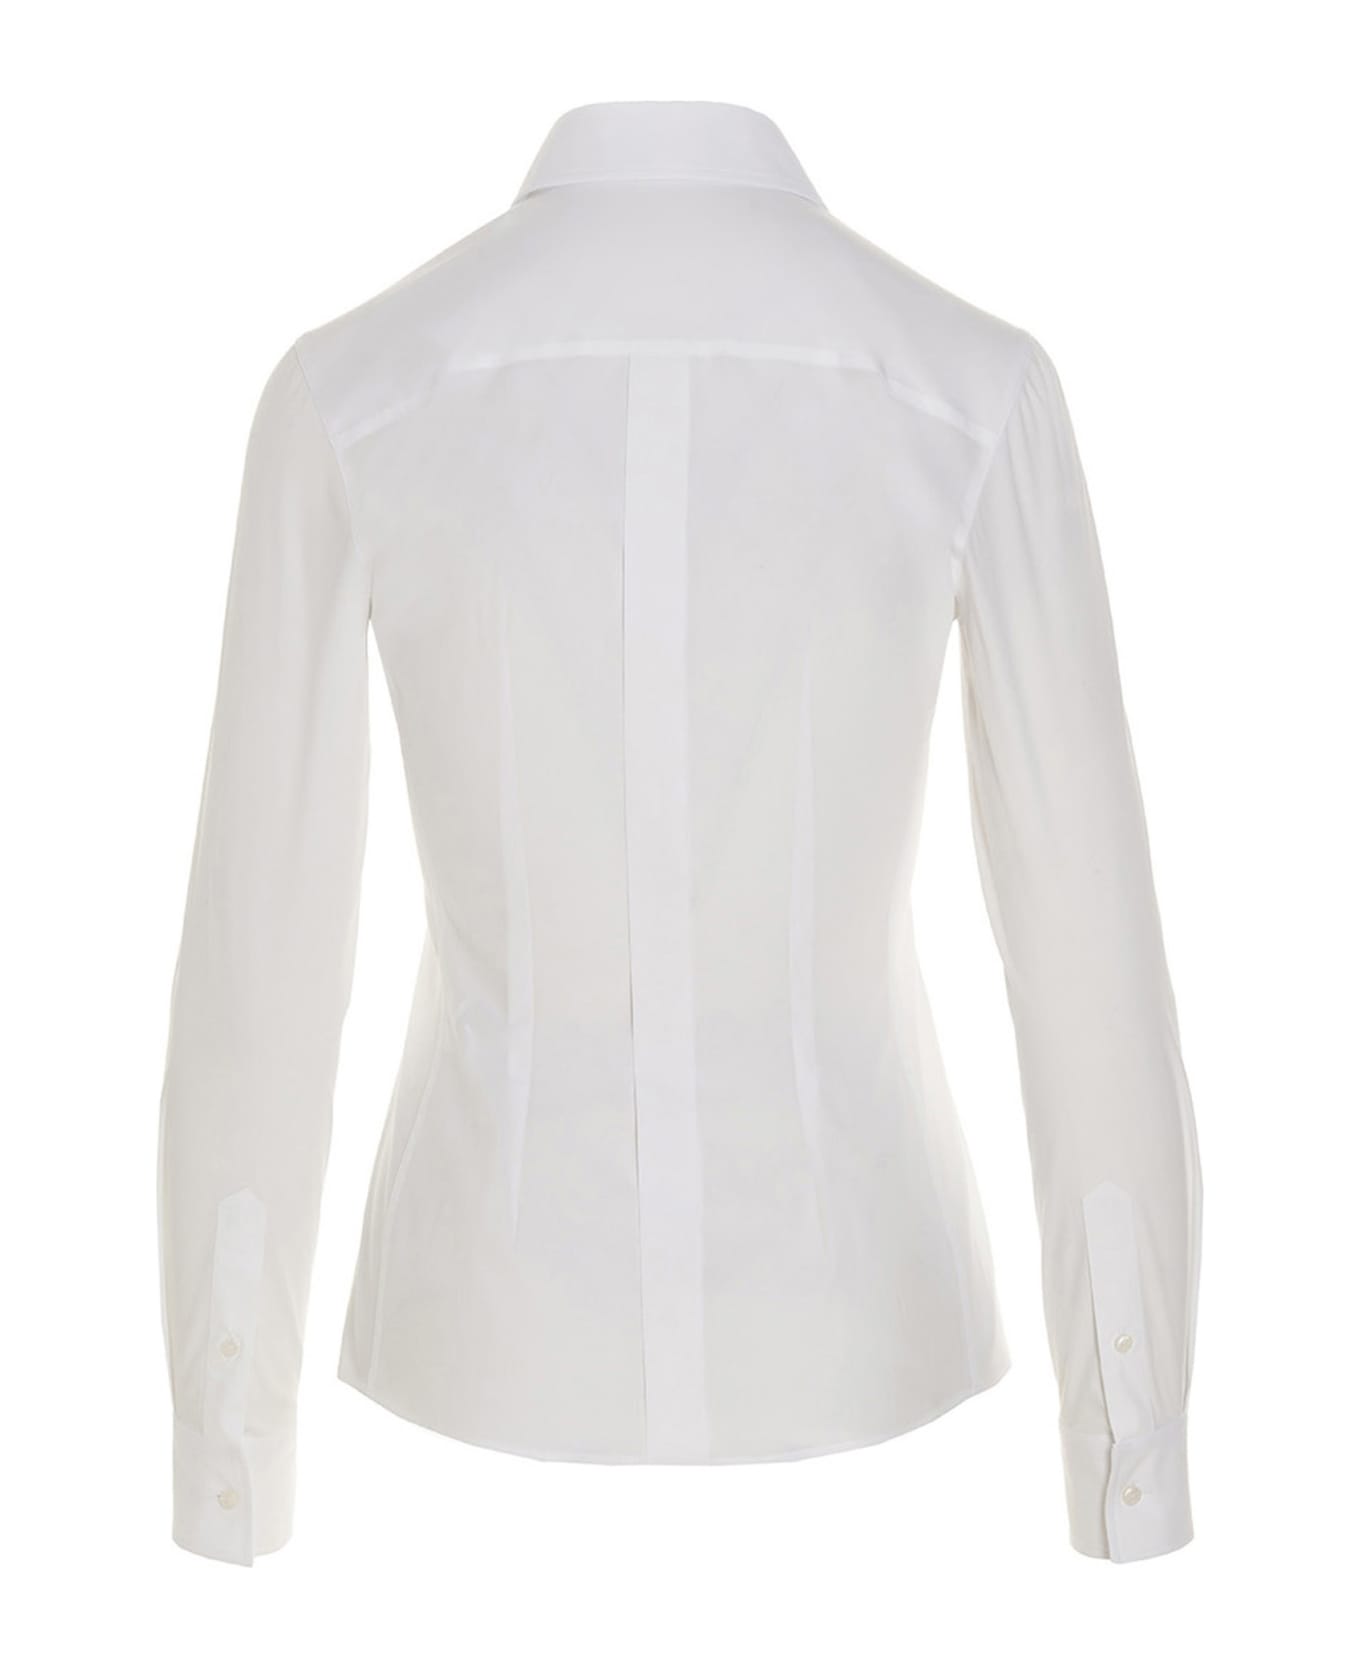 Dolce & Gabbana Poplin Shirt - Bianco